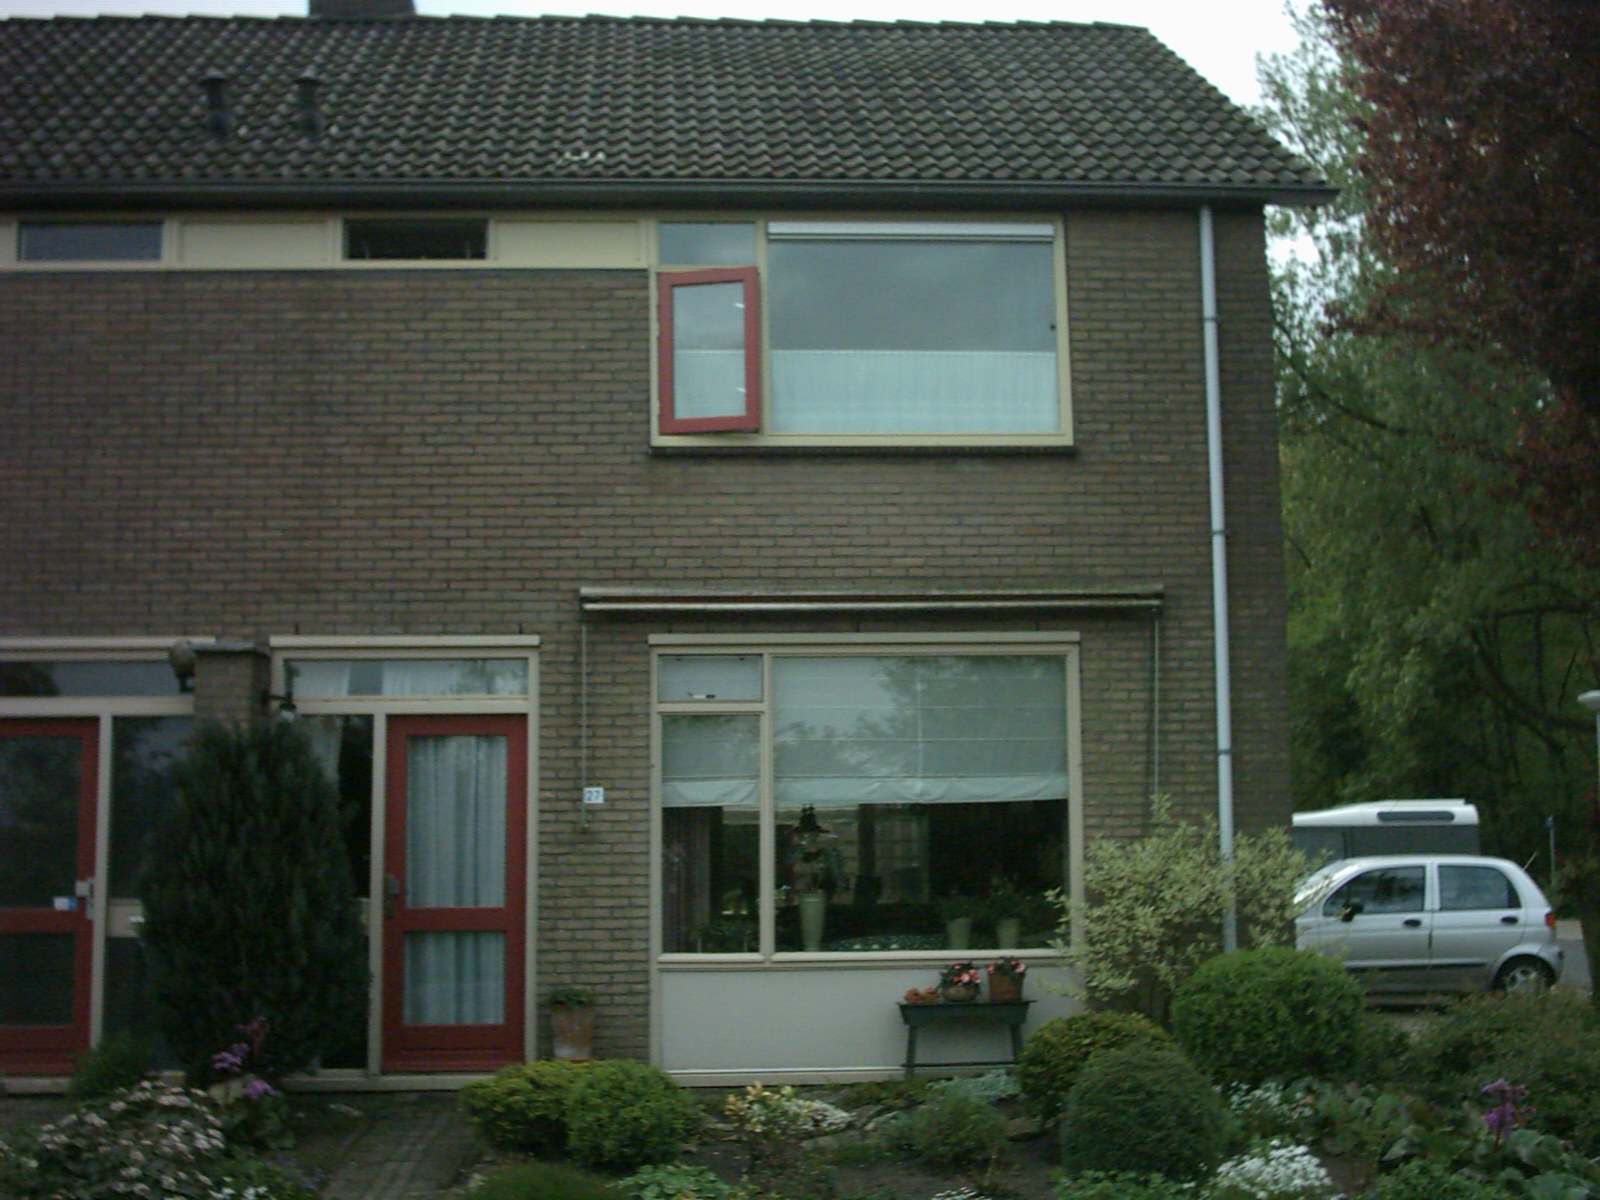 Gaanderij 27, 7211 GD Eefde, Nederland